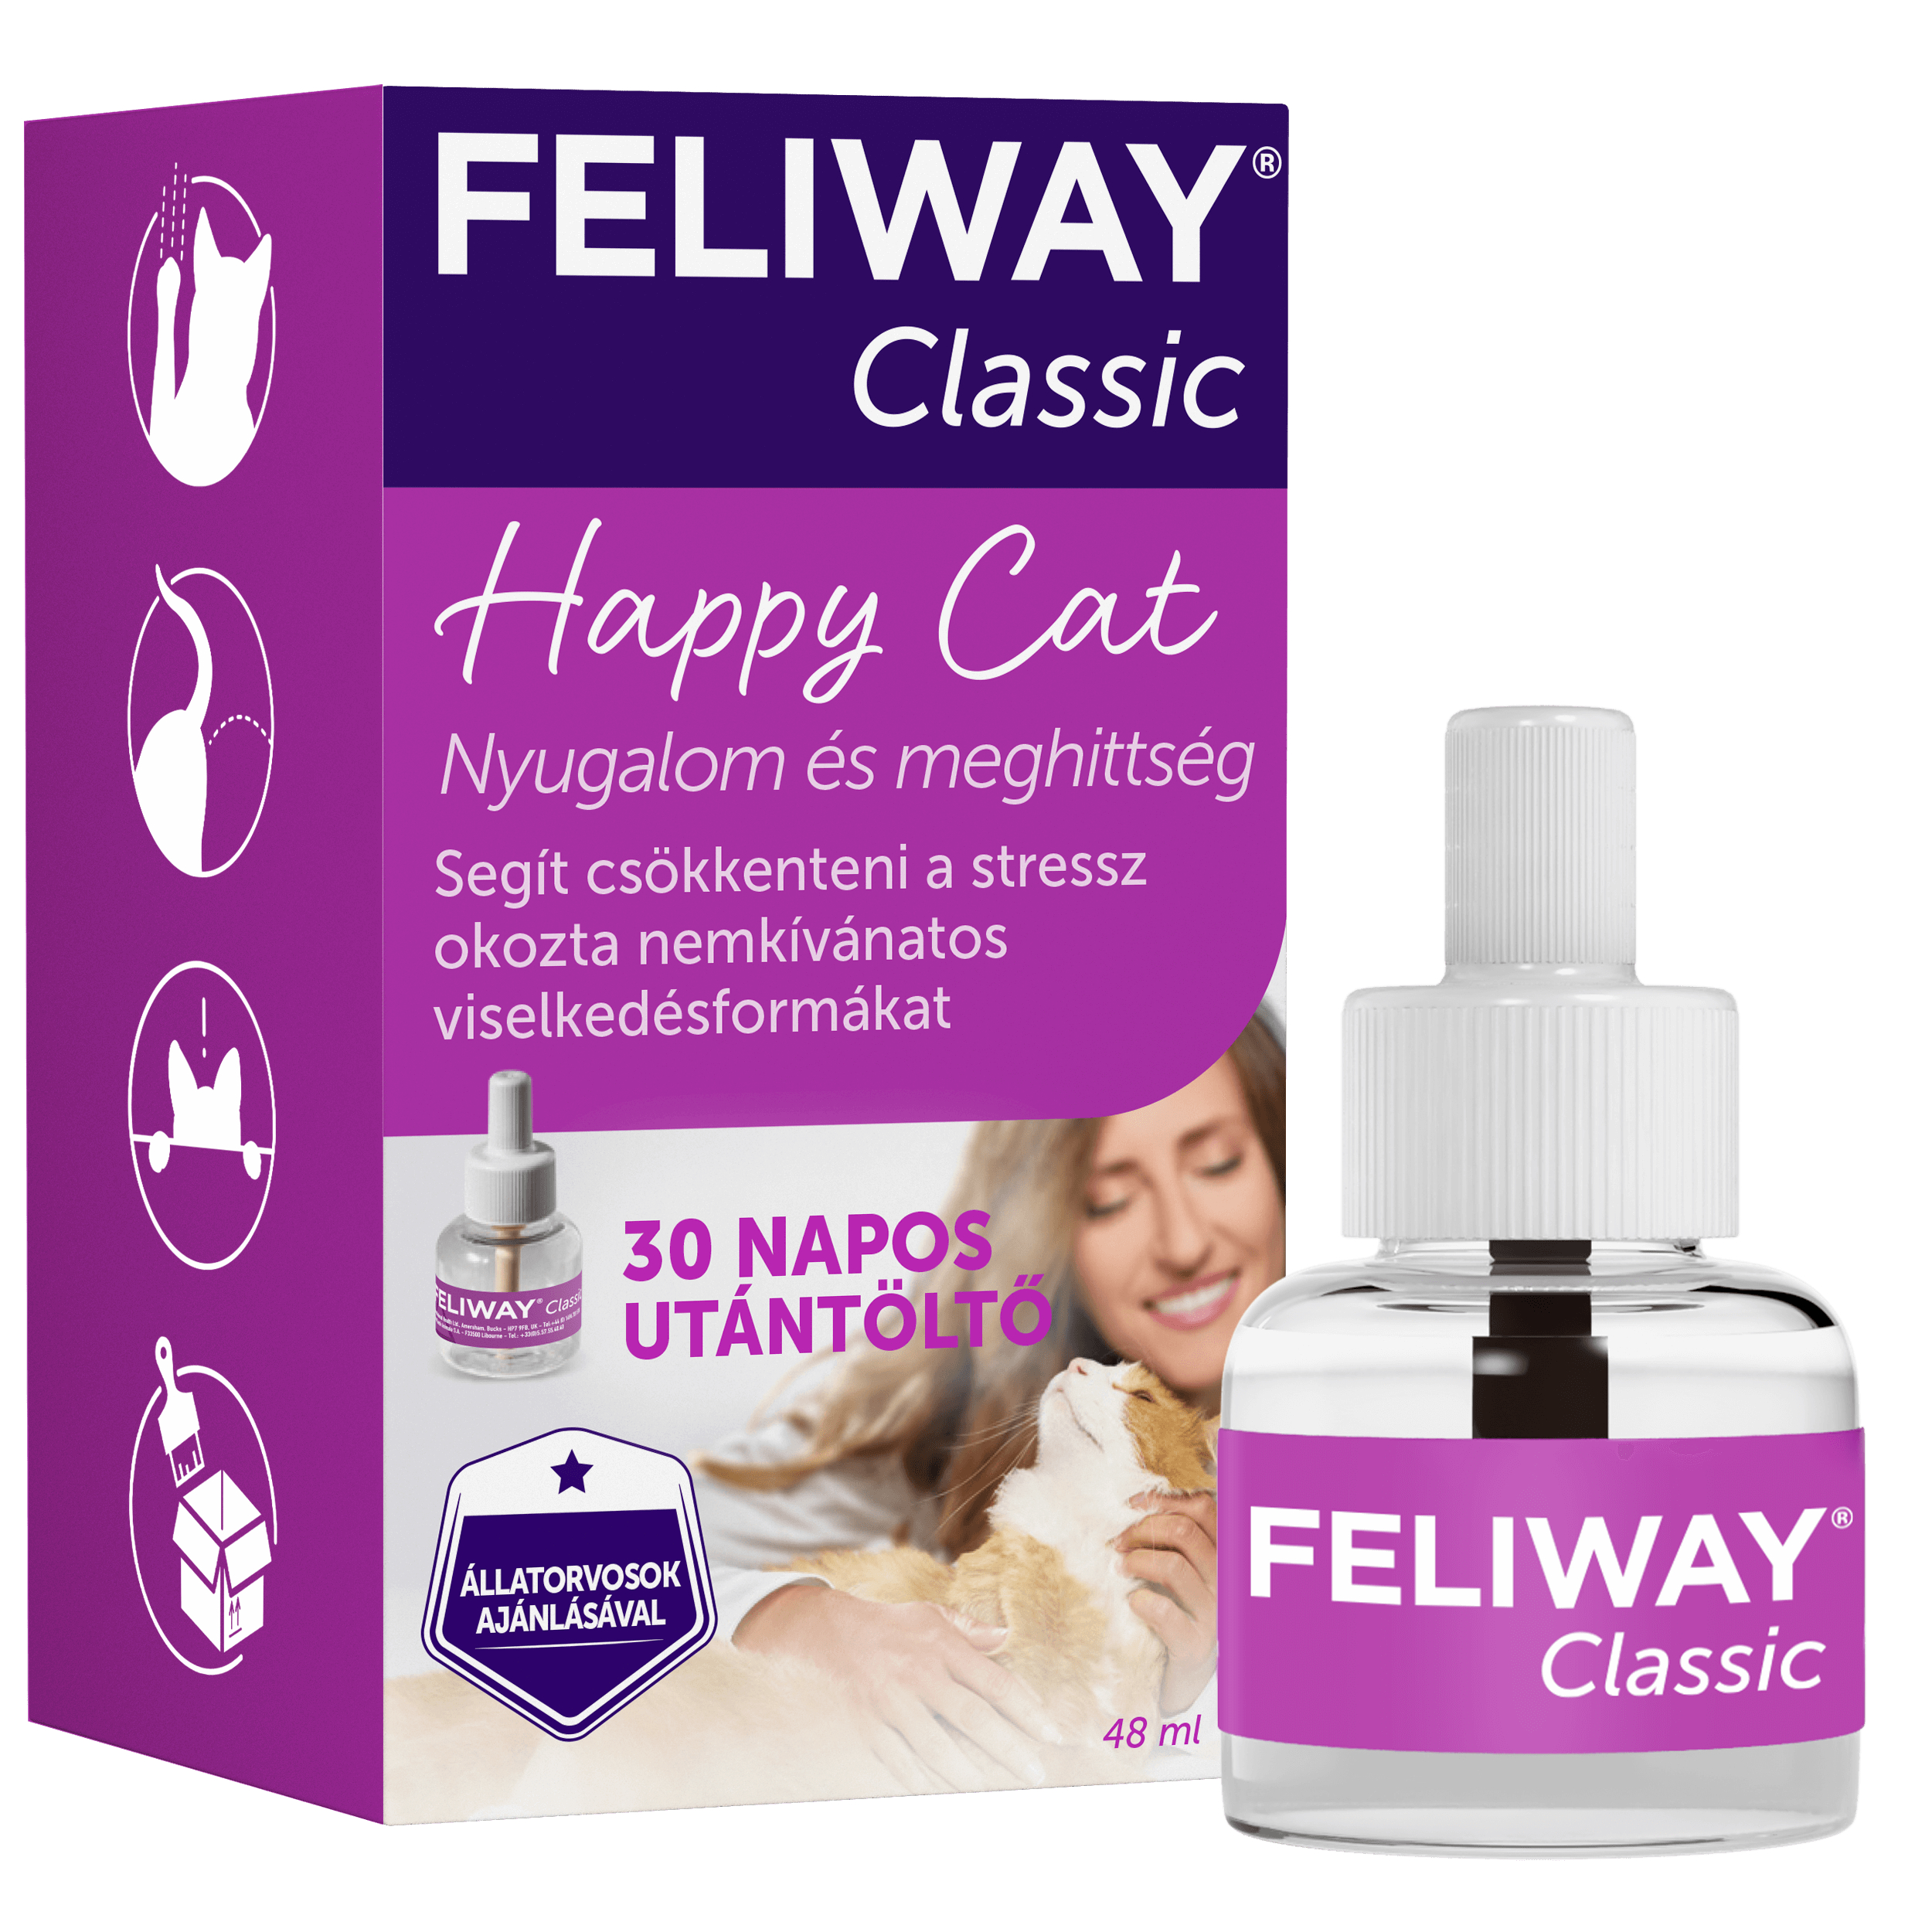 Feliway Classic täyttö kissalle, 48 ml